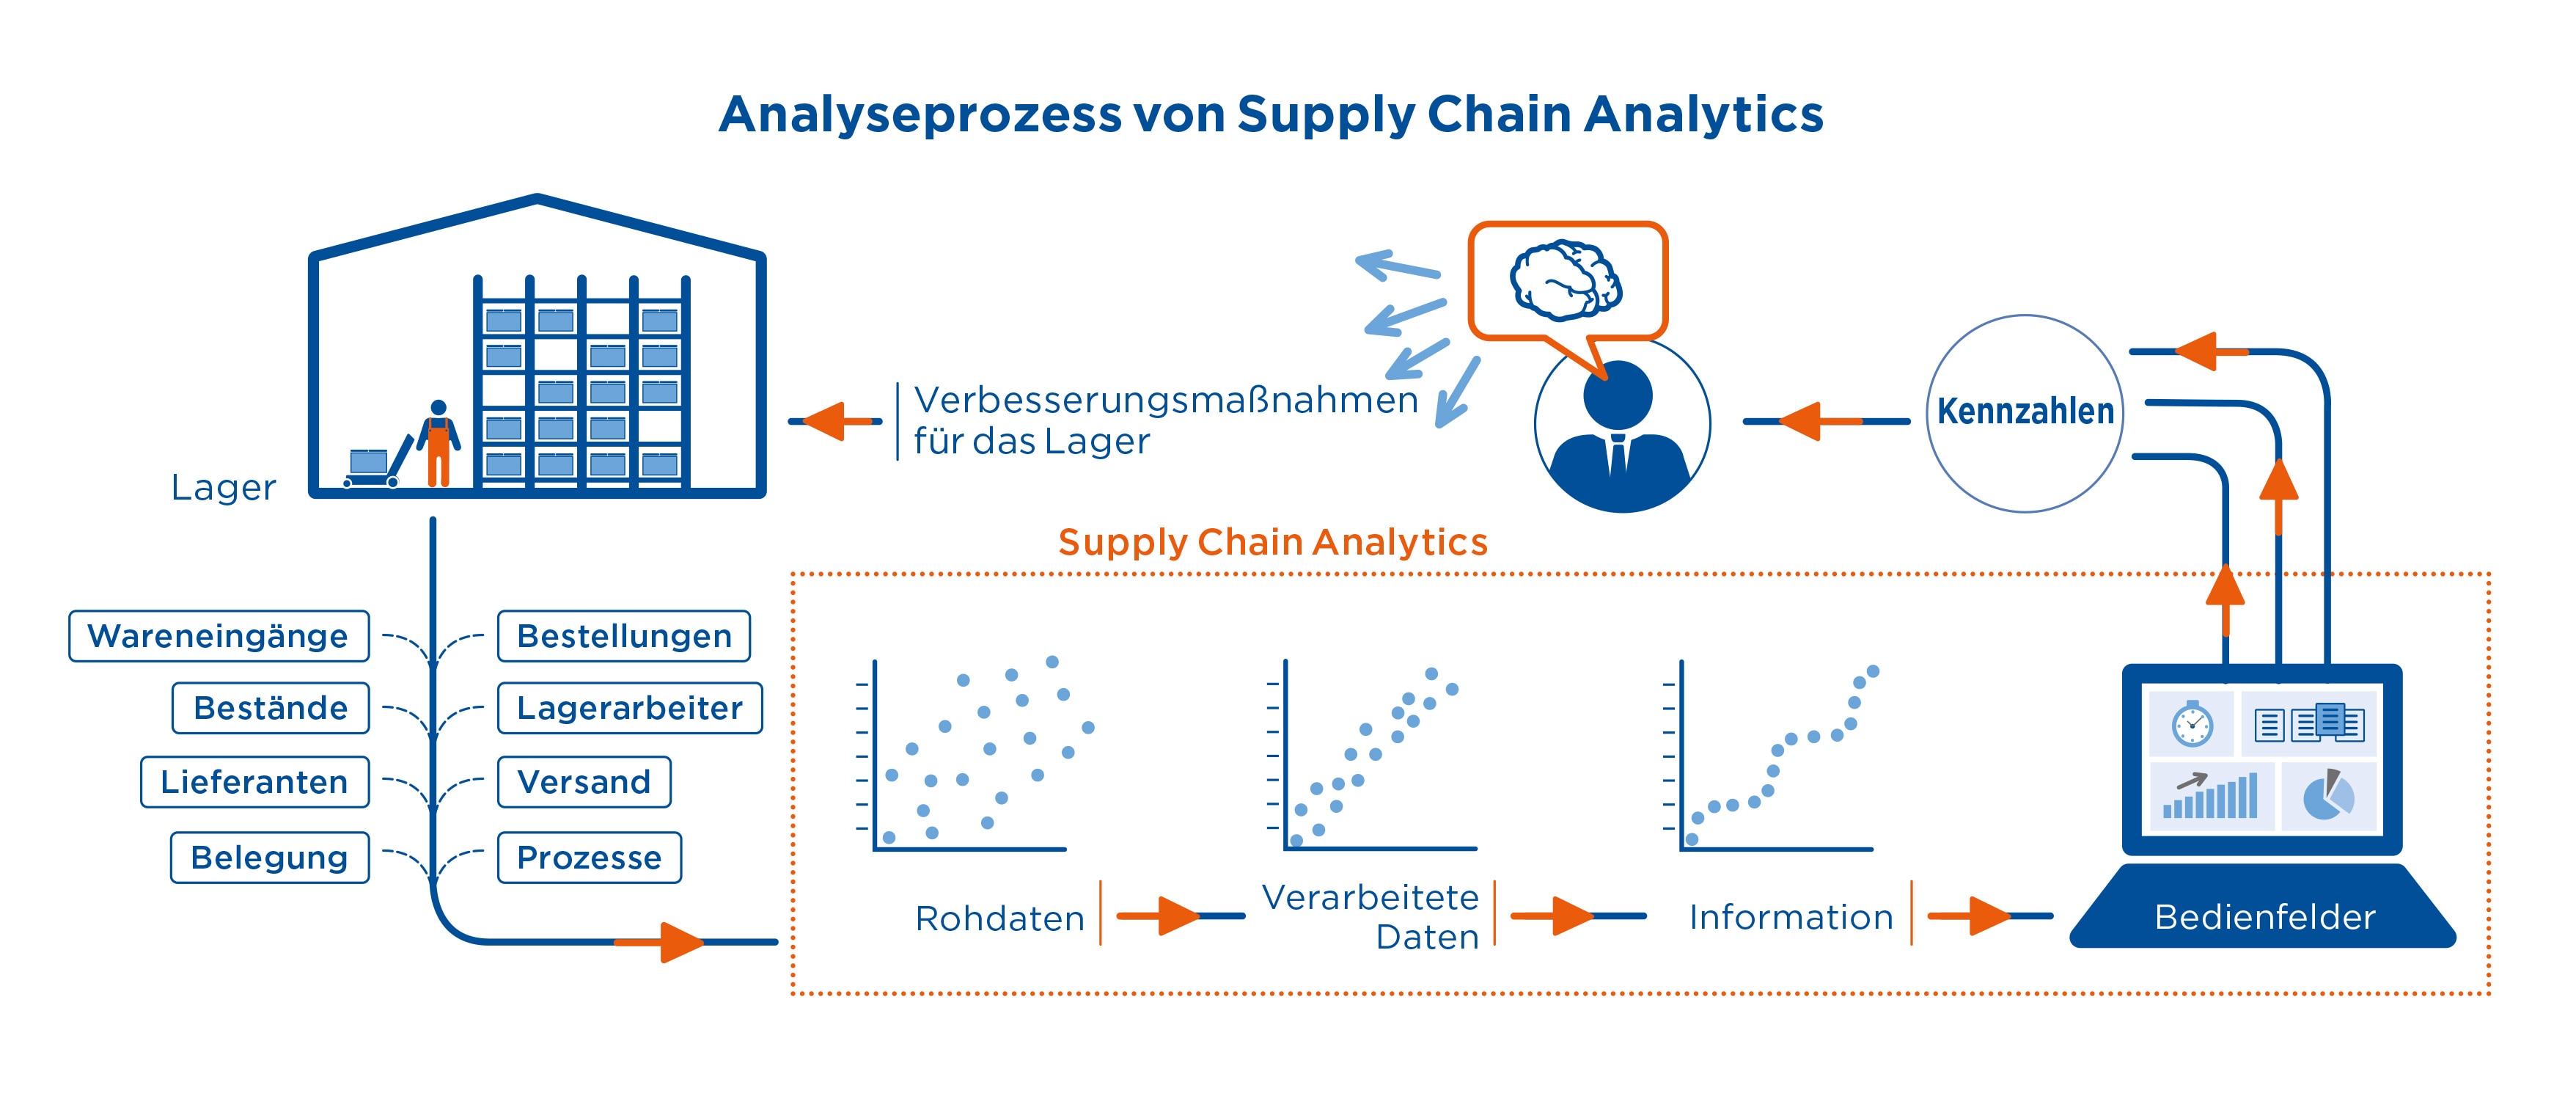 Analyseprozess von Supply Chain Analytics